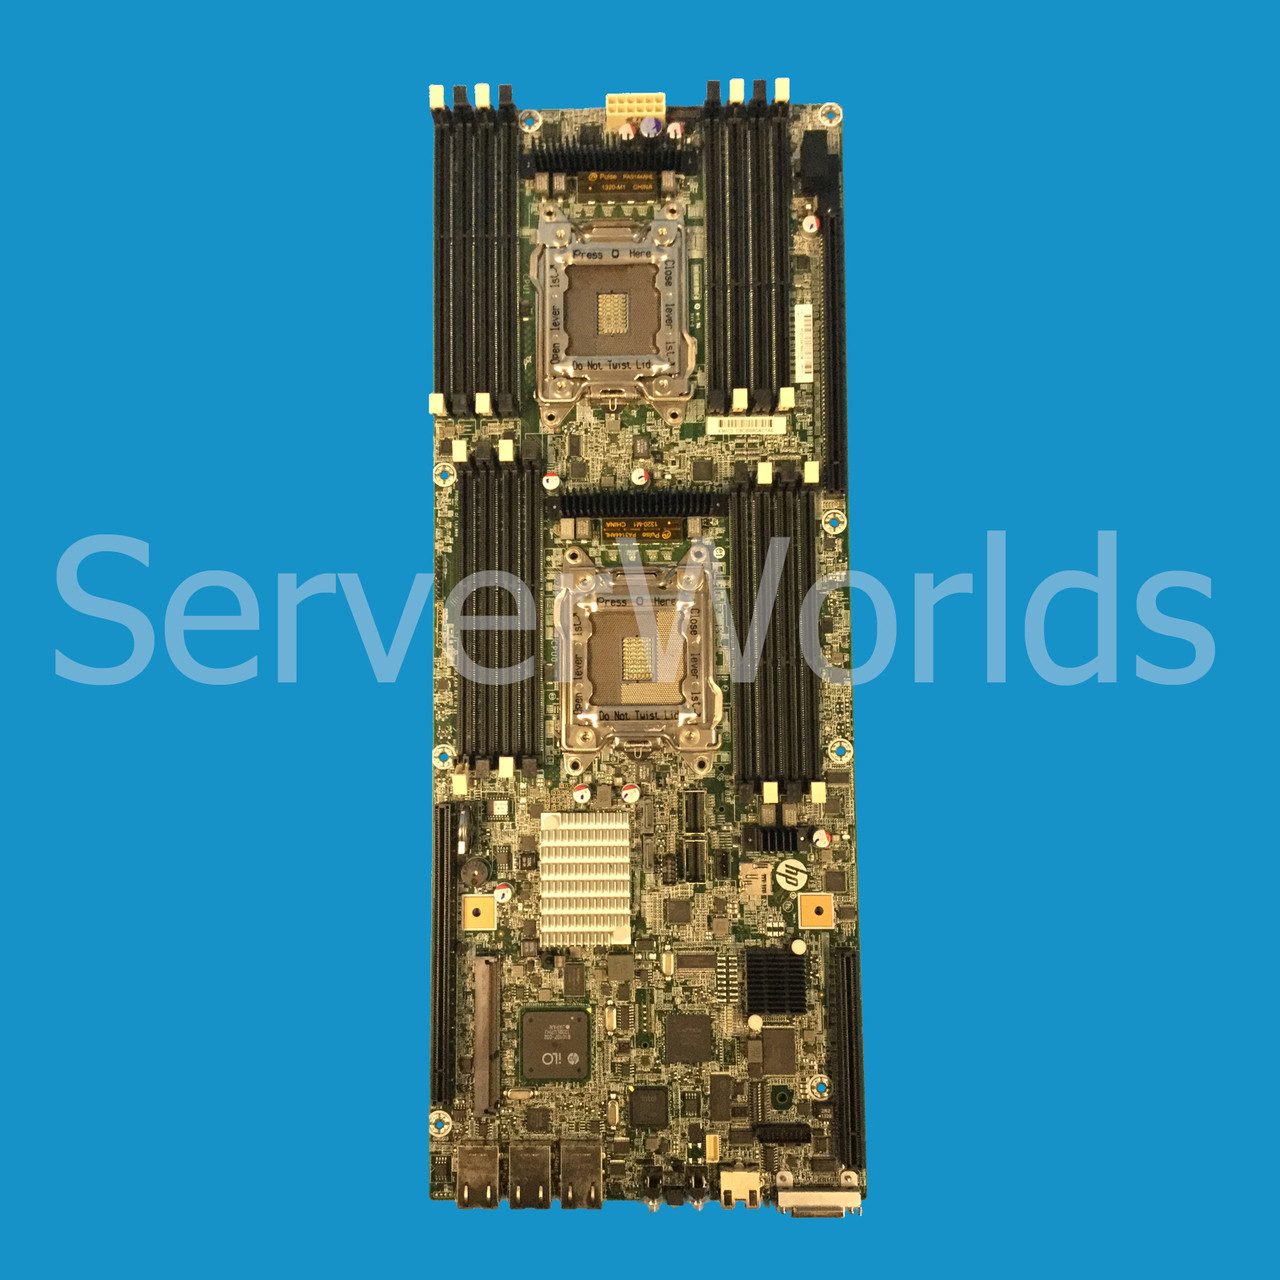 HPe 733171-001 SL2x0s Gen8 System Board Rev OA 650050-004